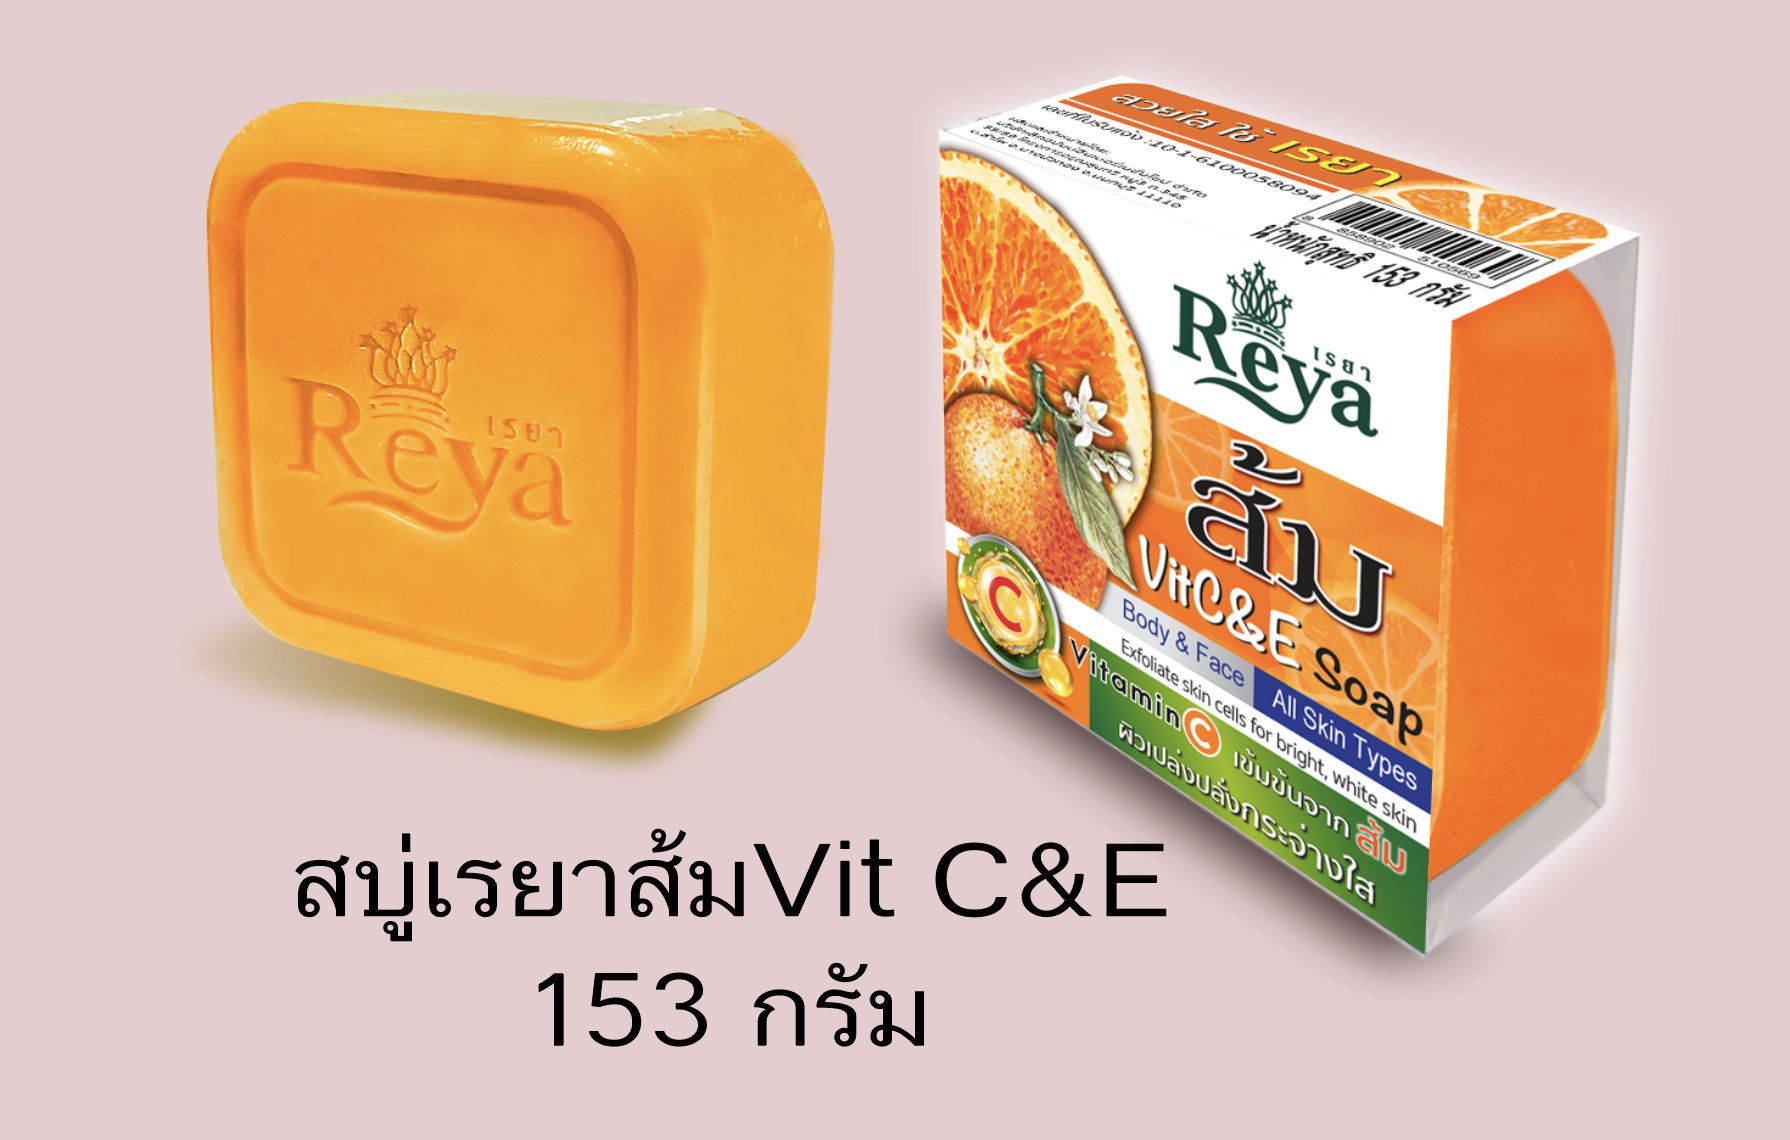 Reya Orange Vitamin C Soap